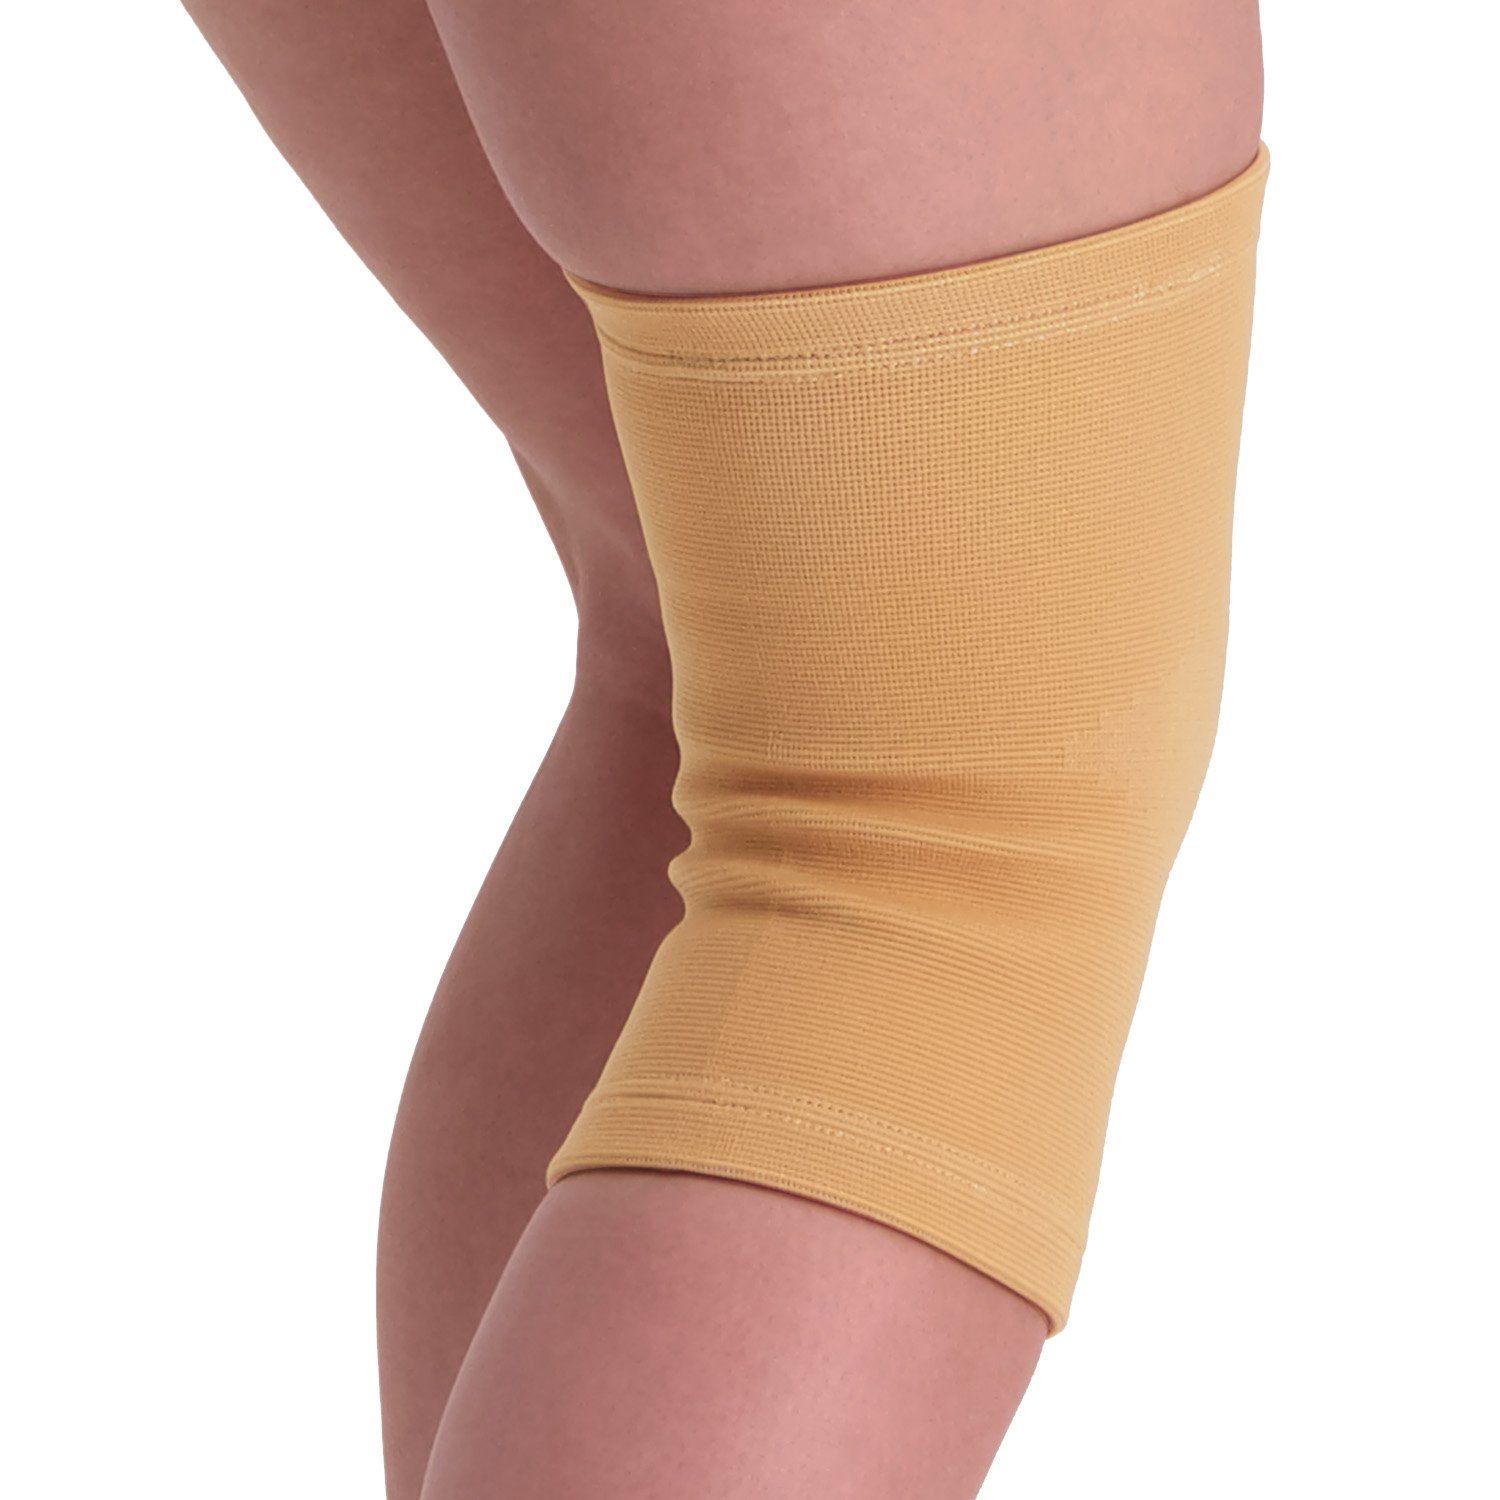 Medidu knee sleeve from behind